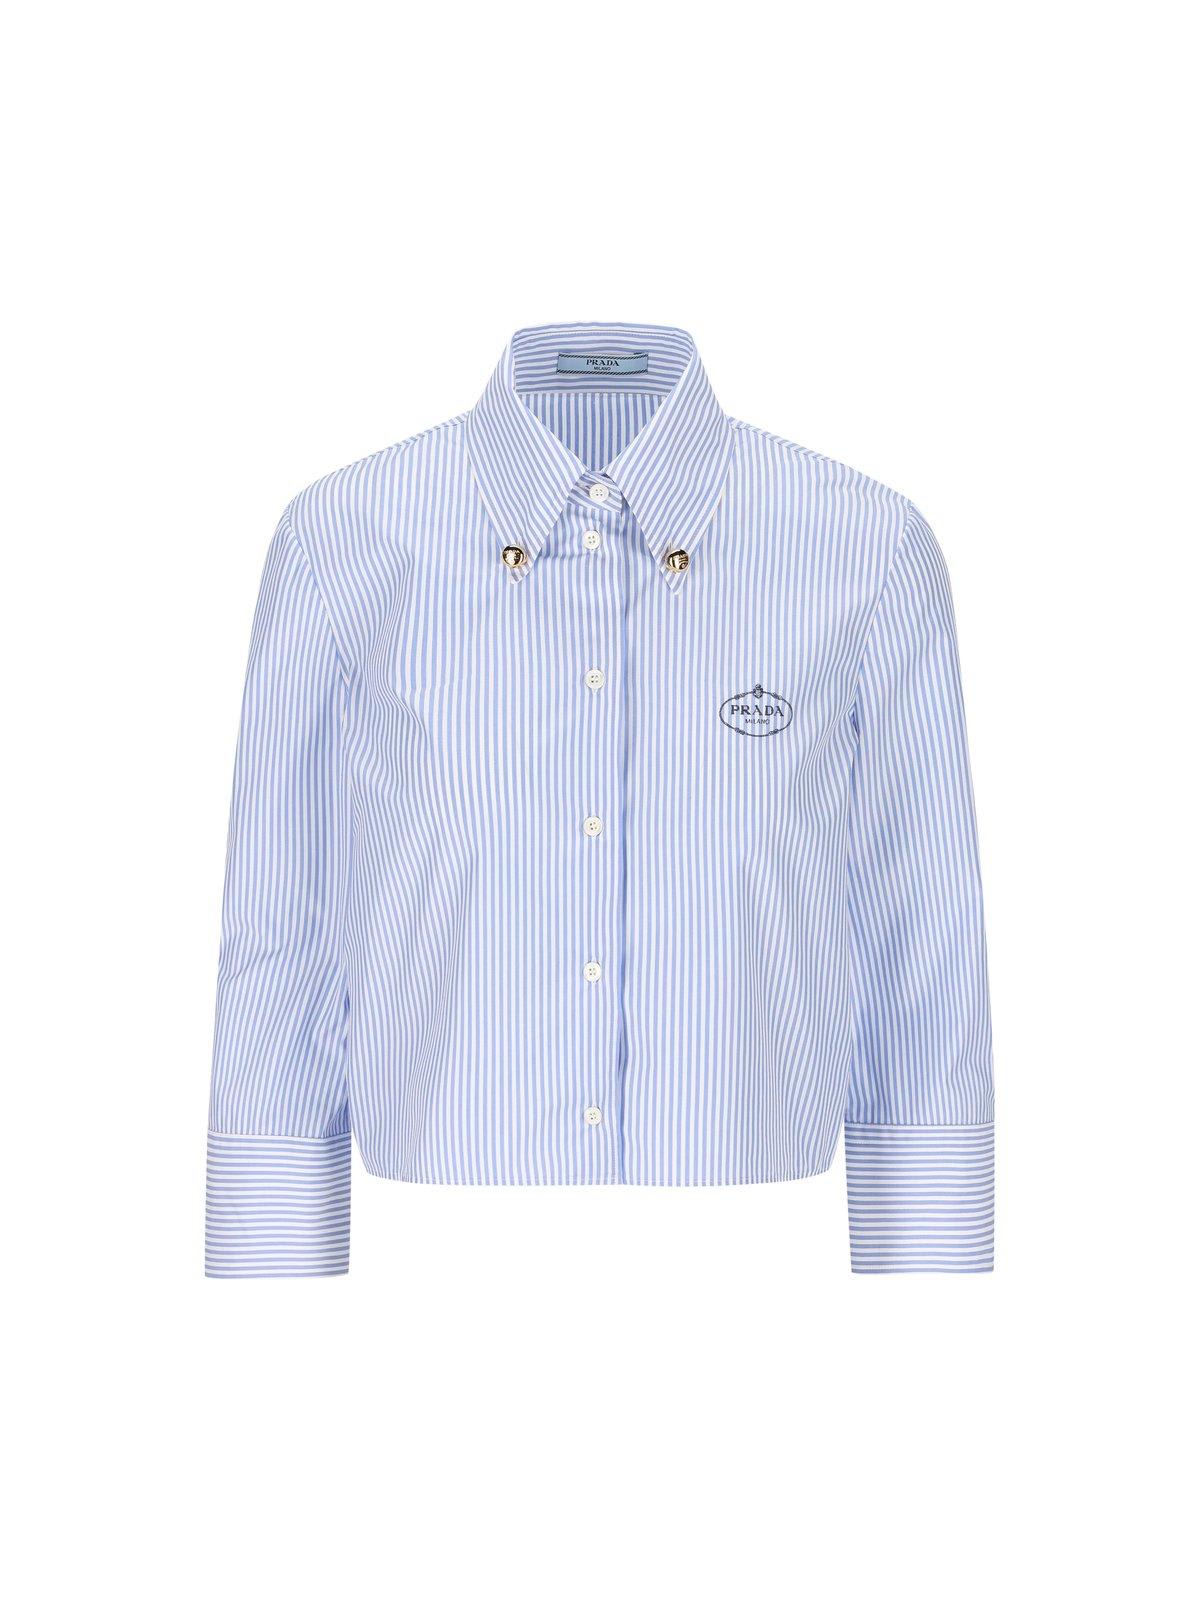 Prada Button-up Striped Shirt